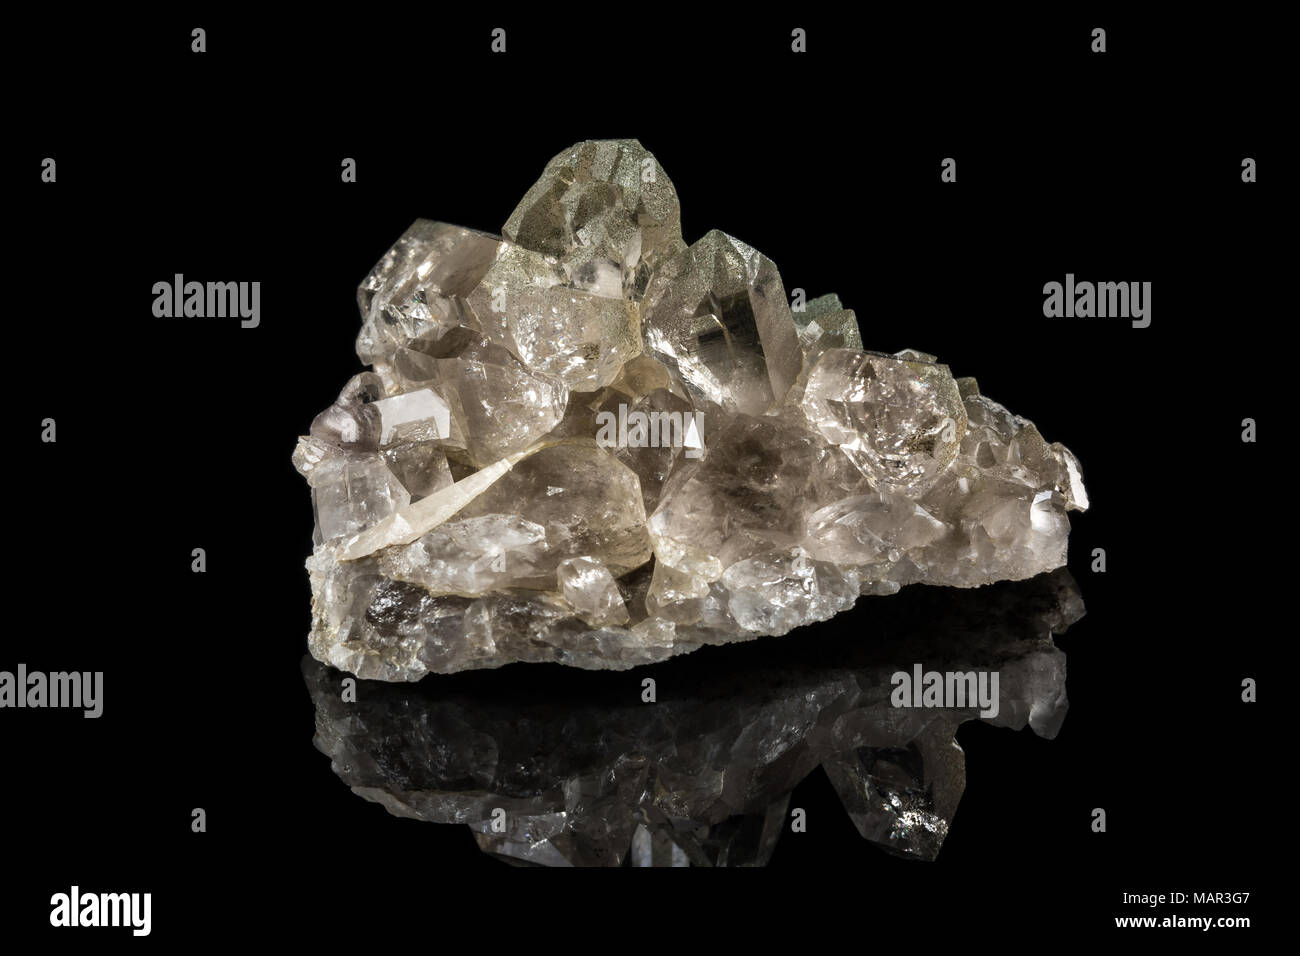 Cristallo Di Berg Immagini e Fotos Stock - Alamy